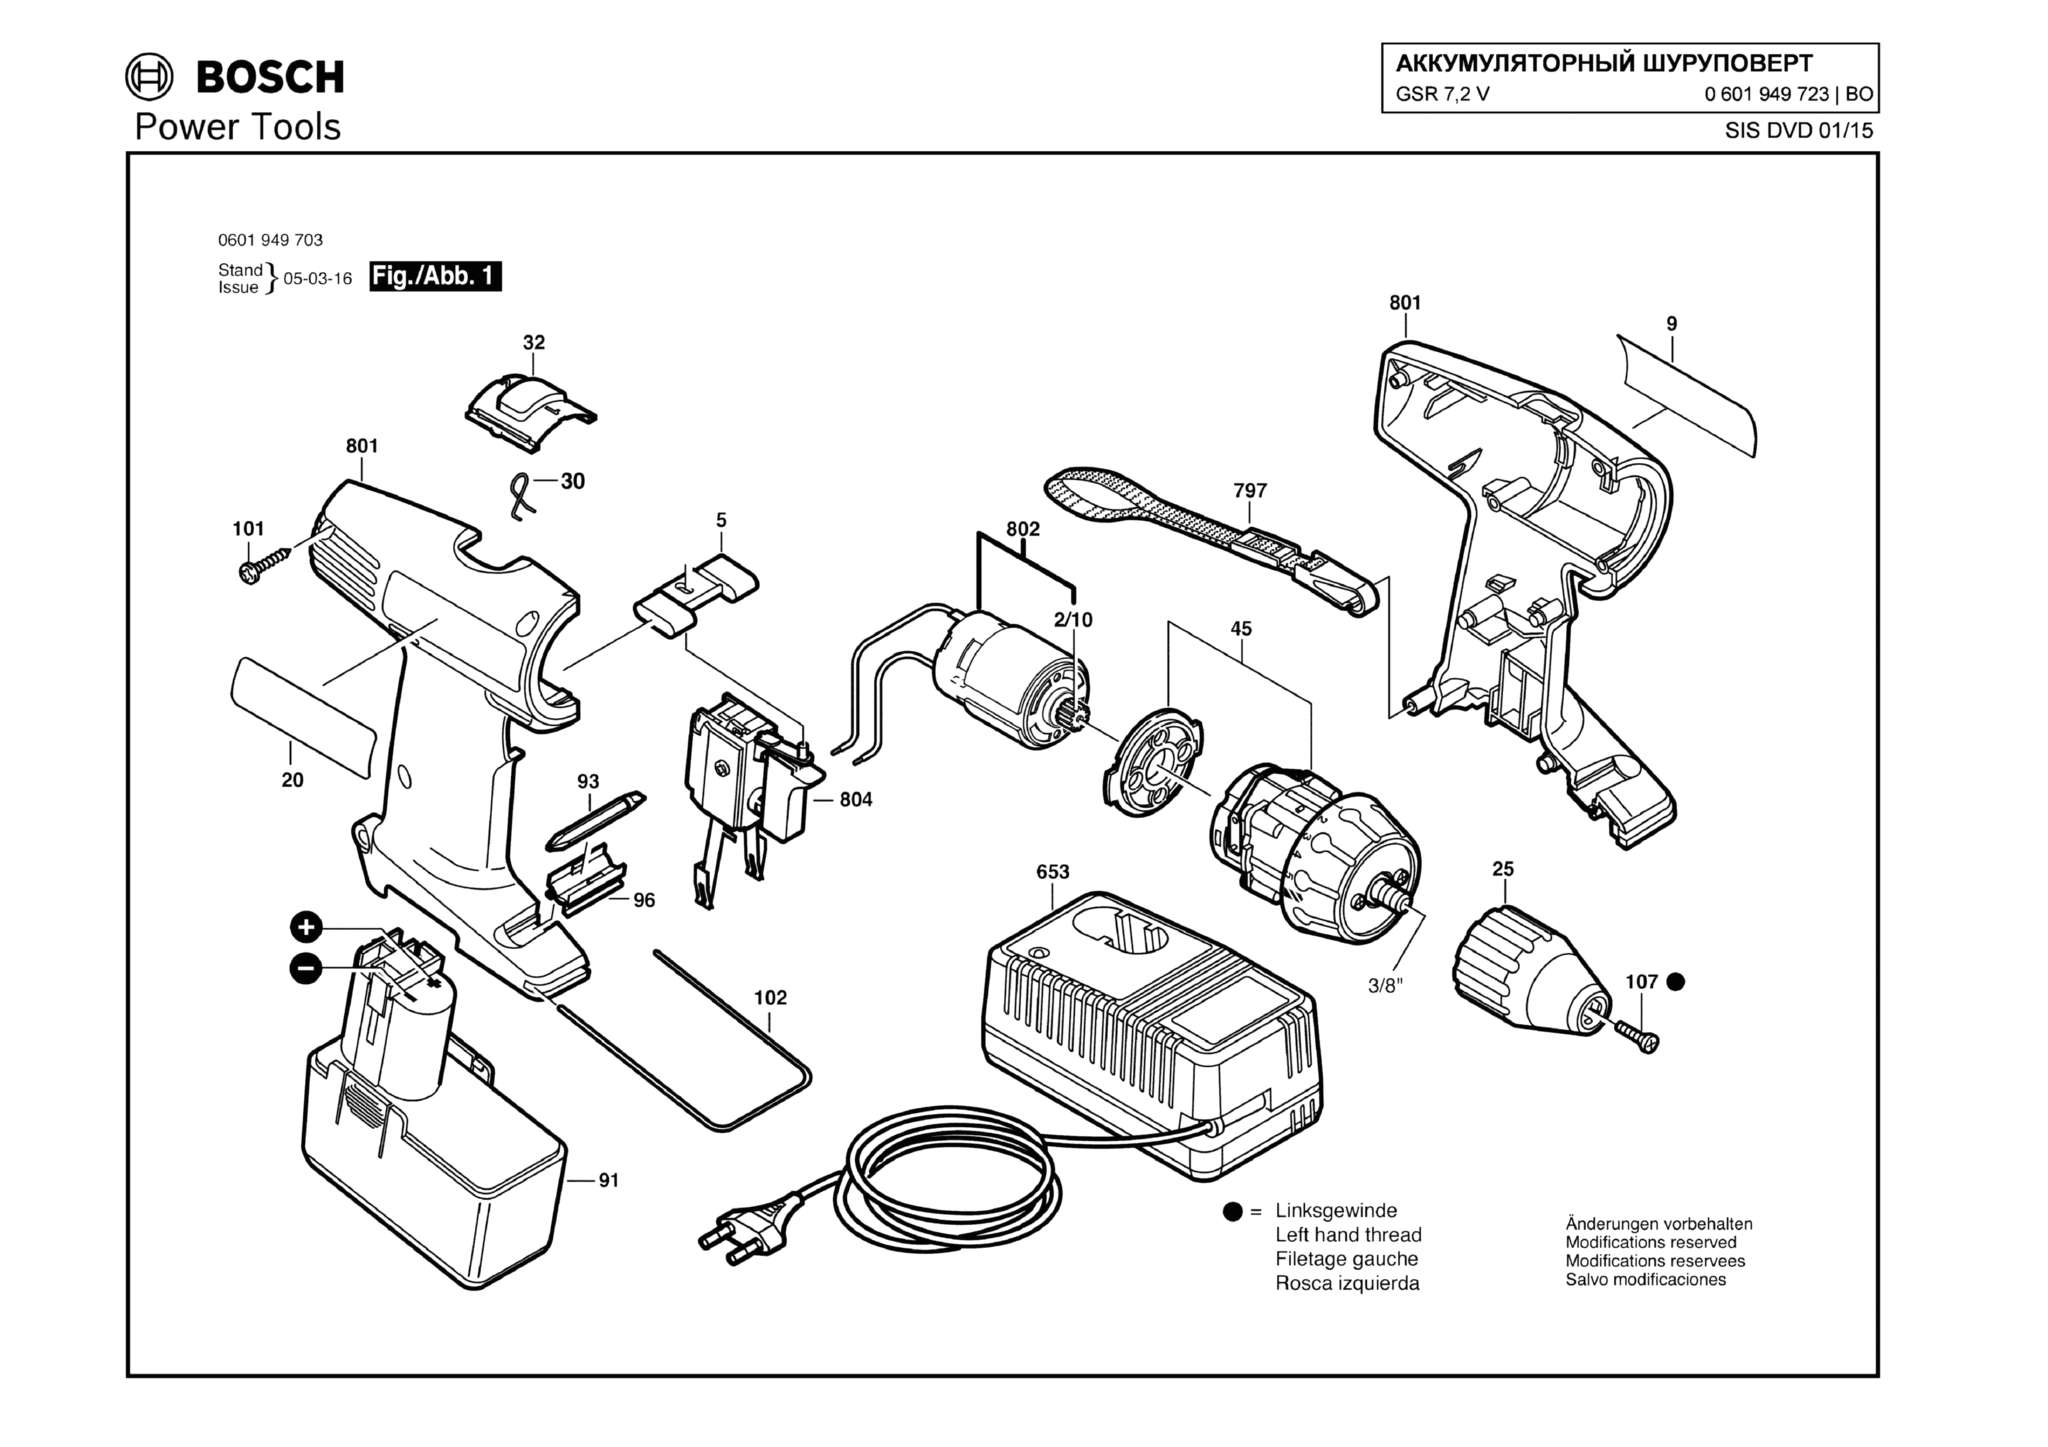 Запчасти, схема и деталировка Bosch GSR 7,2 V (ТИП 0601949723)